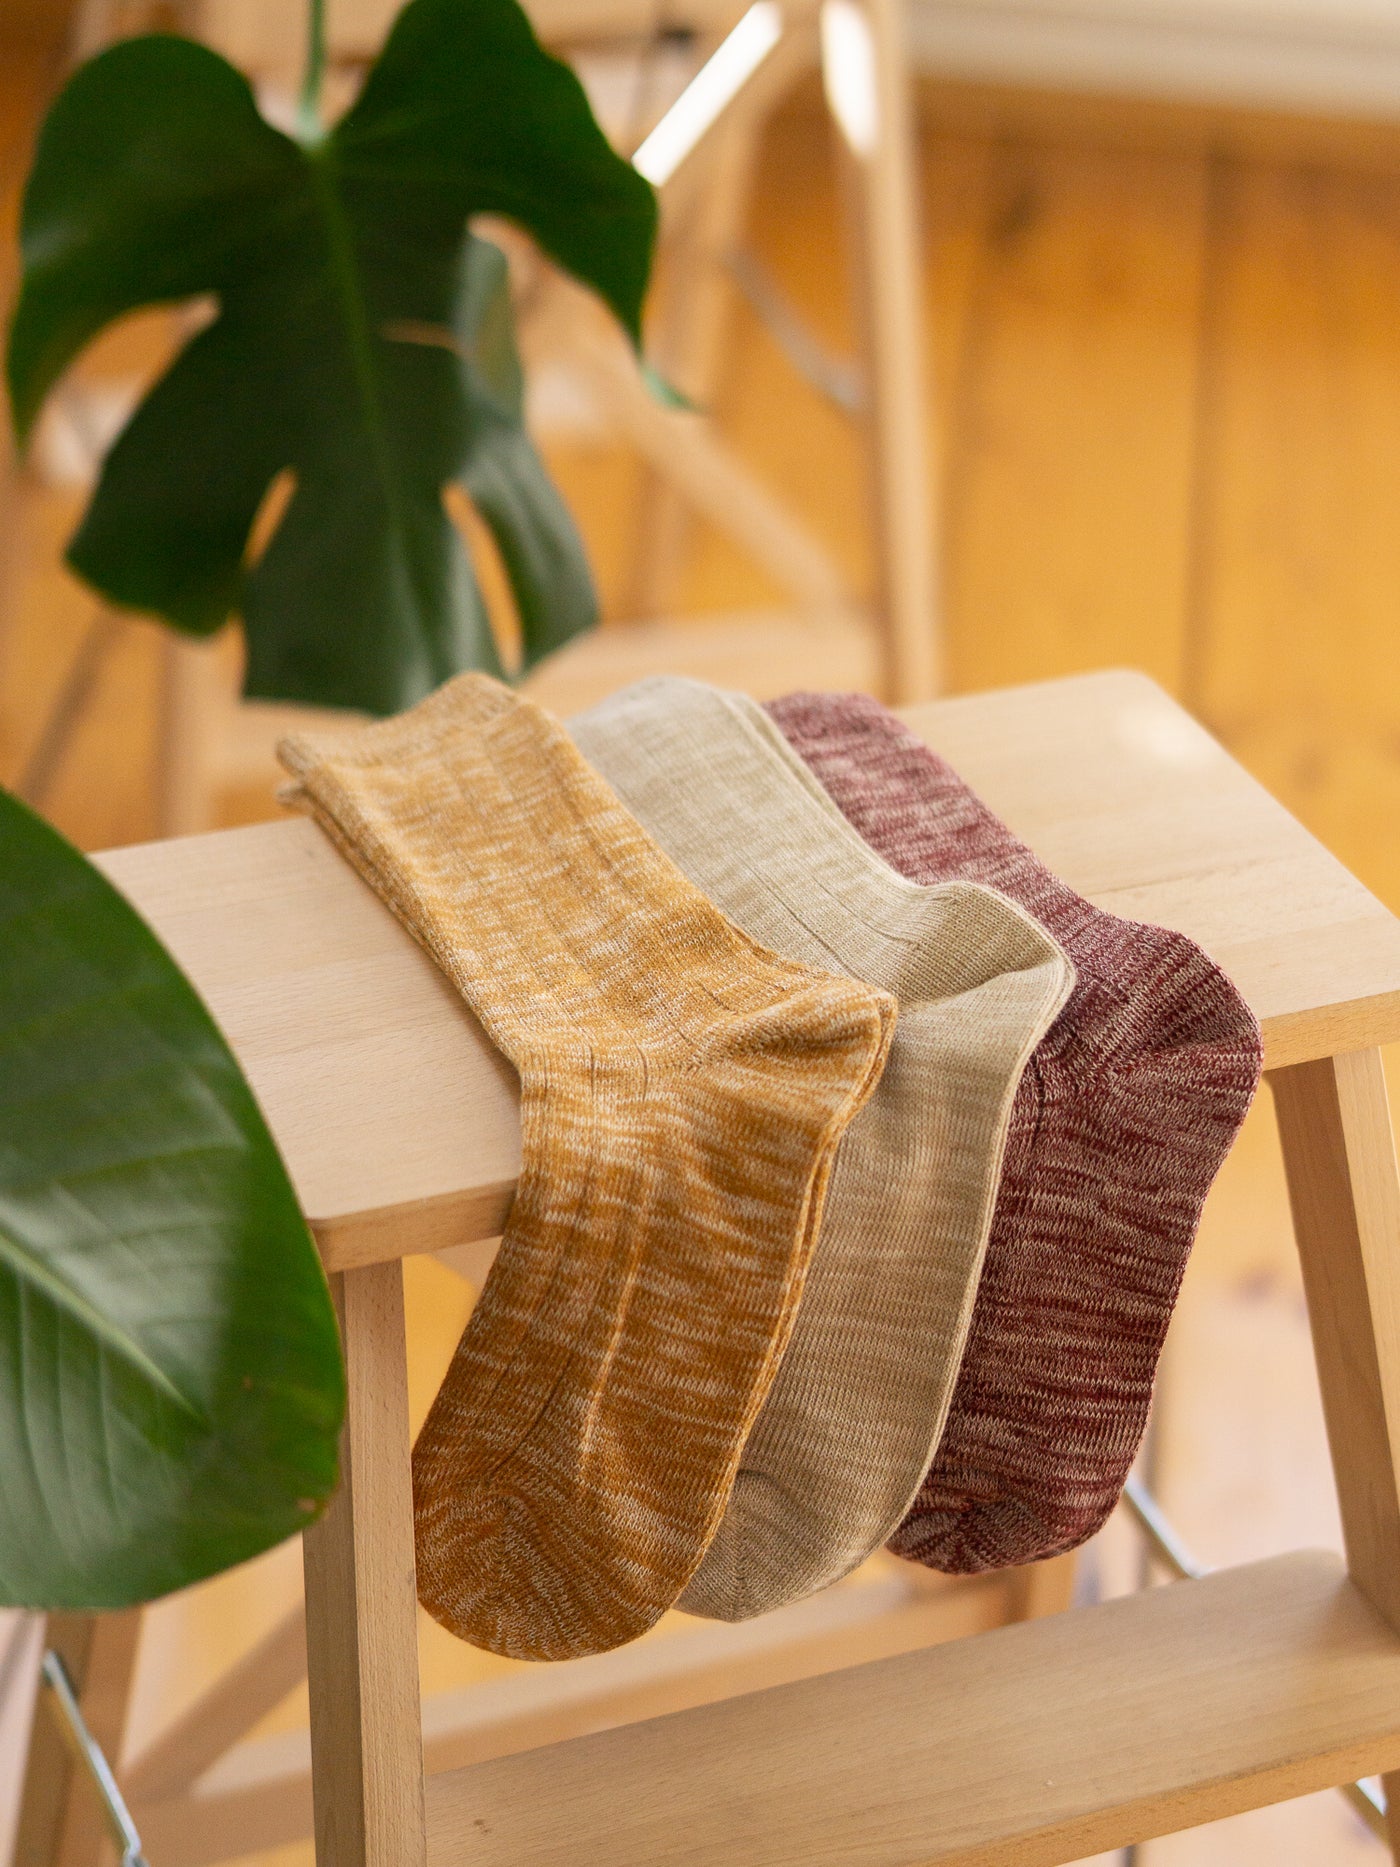 Fair Fashion FUXBAU Socken in senfgelb, beige und bordeaux  meliert aus GOTS zertifizierter Biobaumwolle